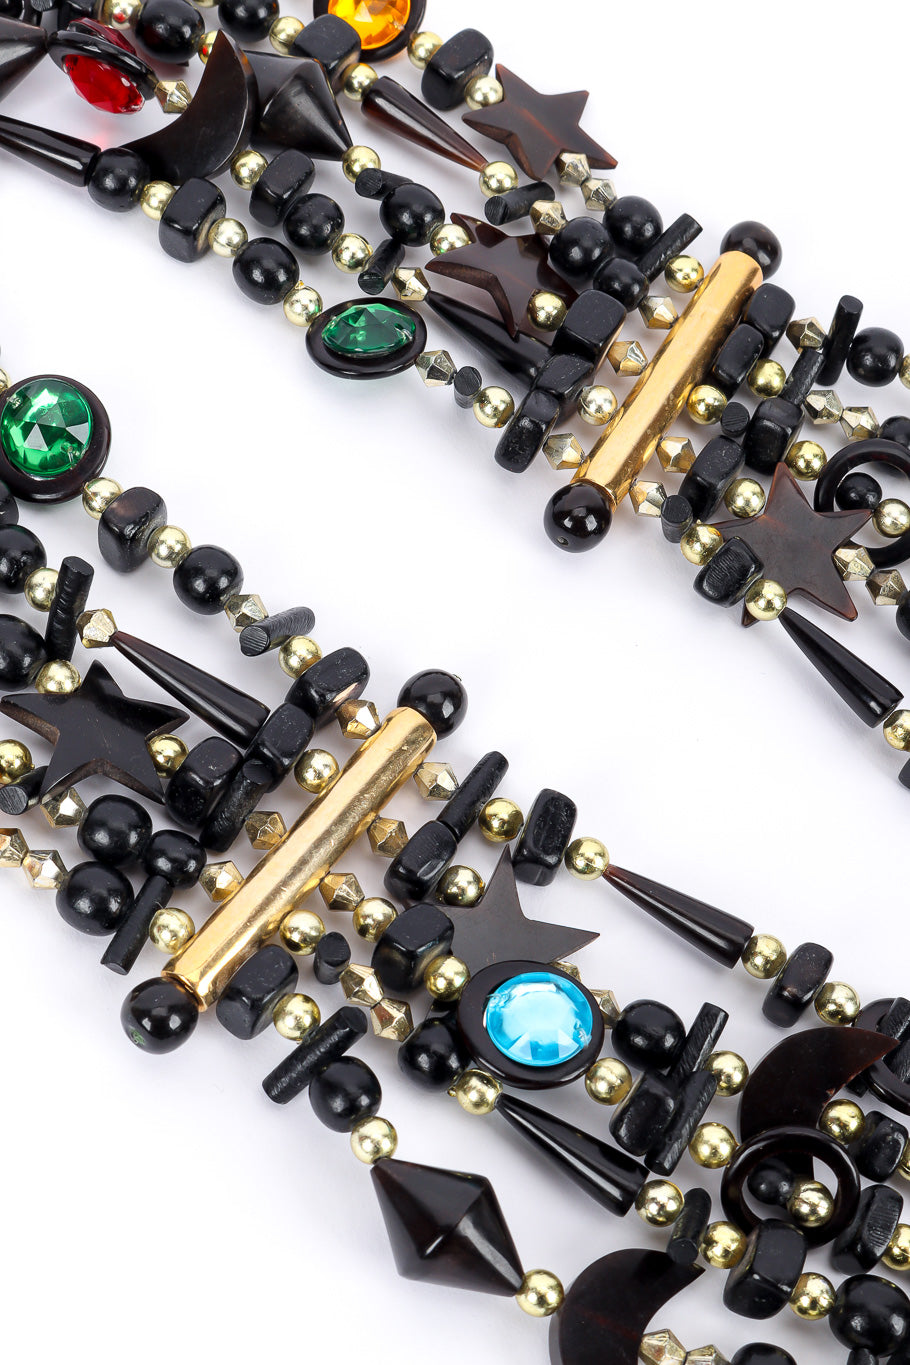 Vintage Gerda Lynggard 5 Strand Celestial Collar Necklace bead and connector hardware closeup @Recessla